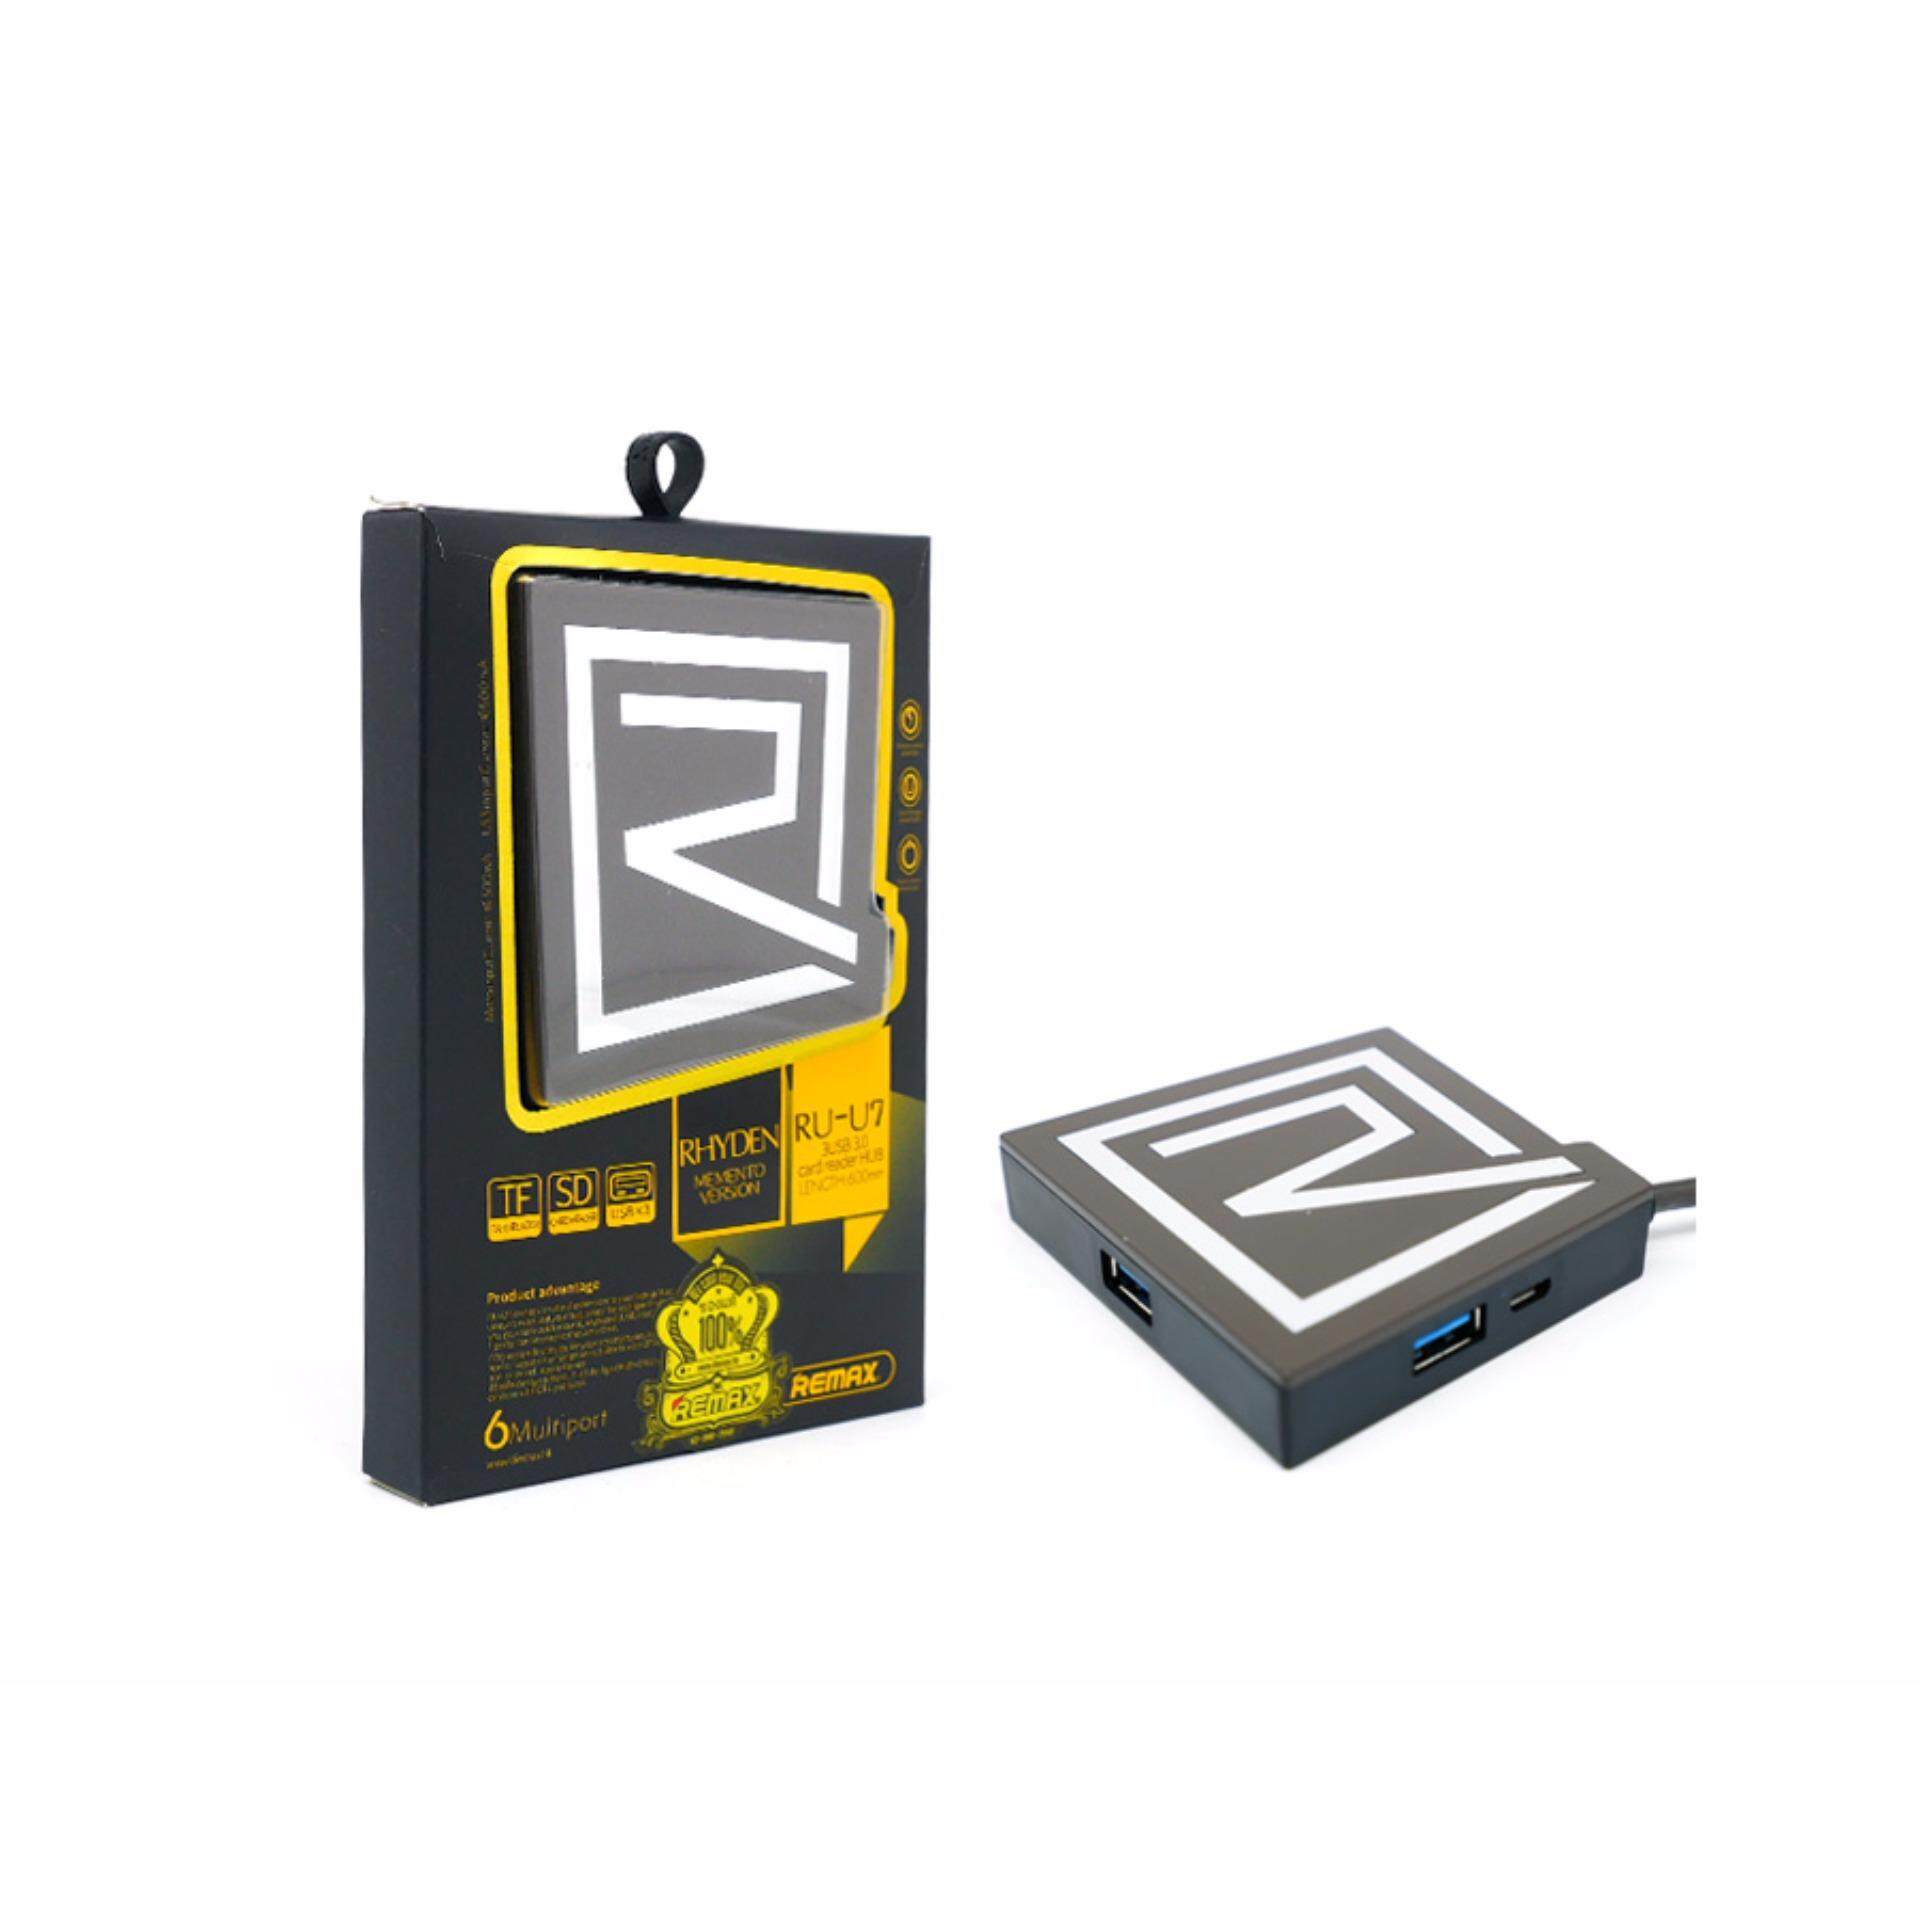 [IX] Remax RU-U7 3USB 3.0 Card Reader HUB 600mm (Black)